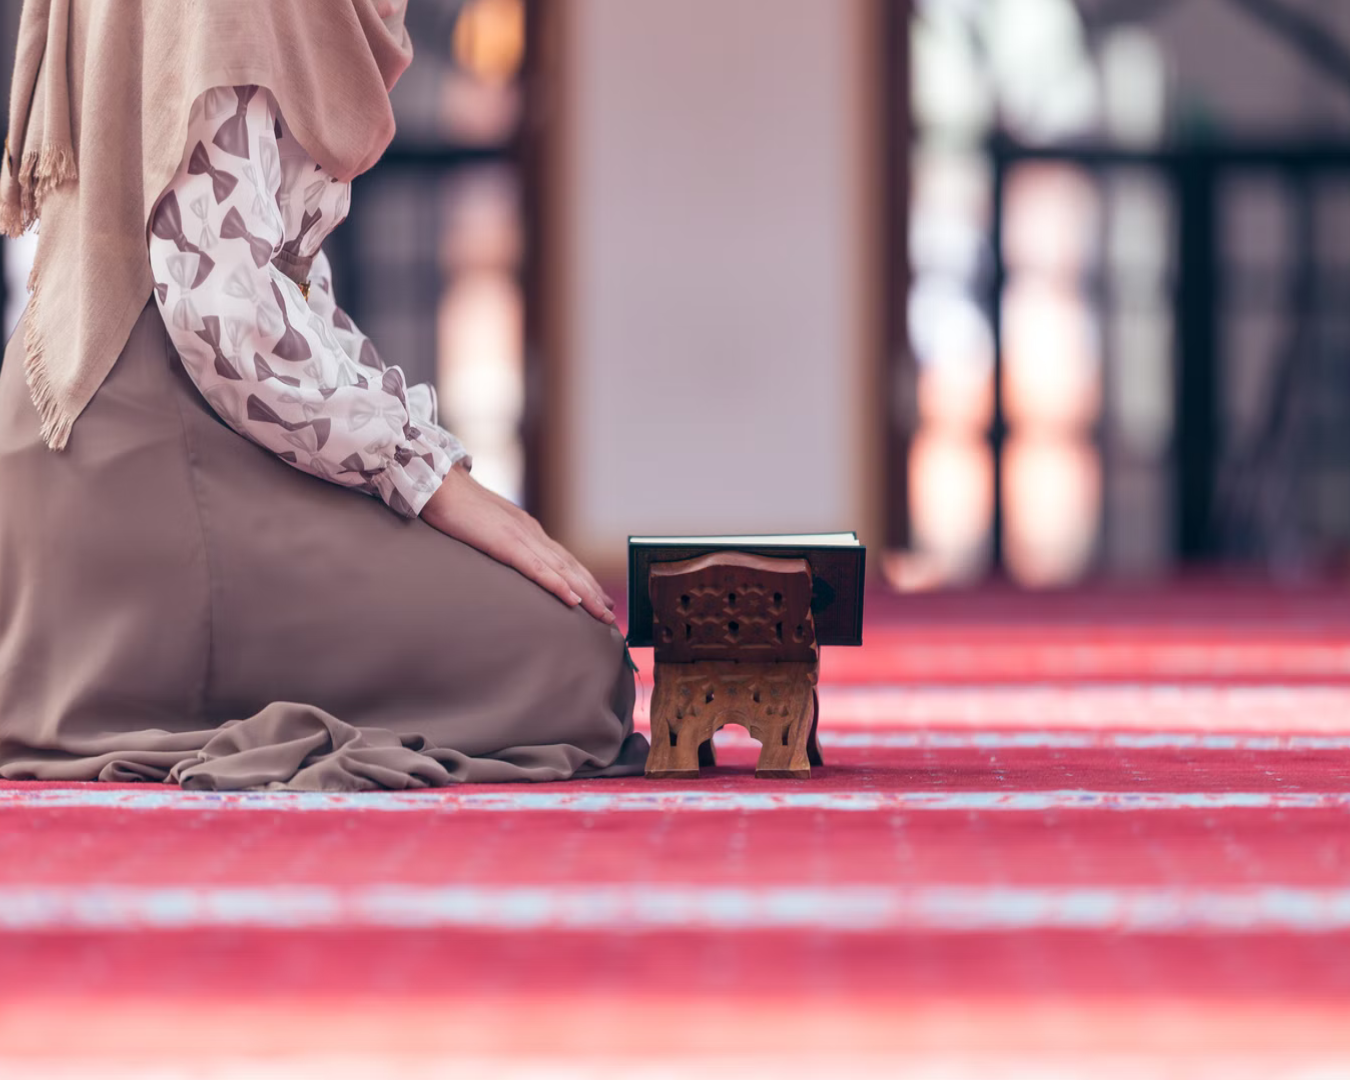 يعتقد 75 في المئة من الناس بوجوب تغيير توجه المساجد كي تصبح أكثر ترحيبا بالنساء 